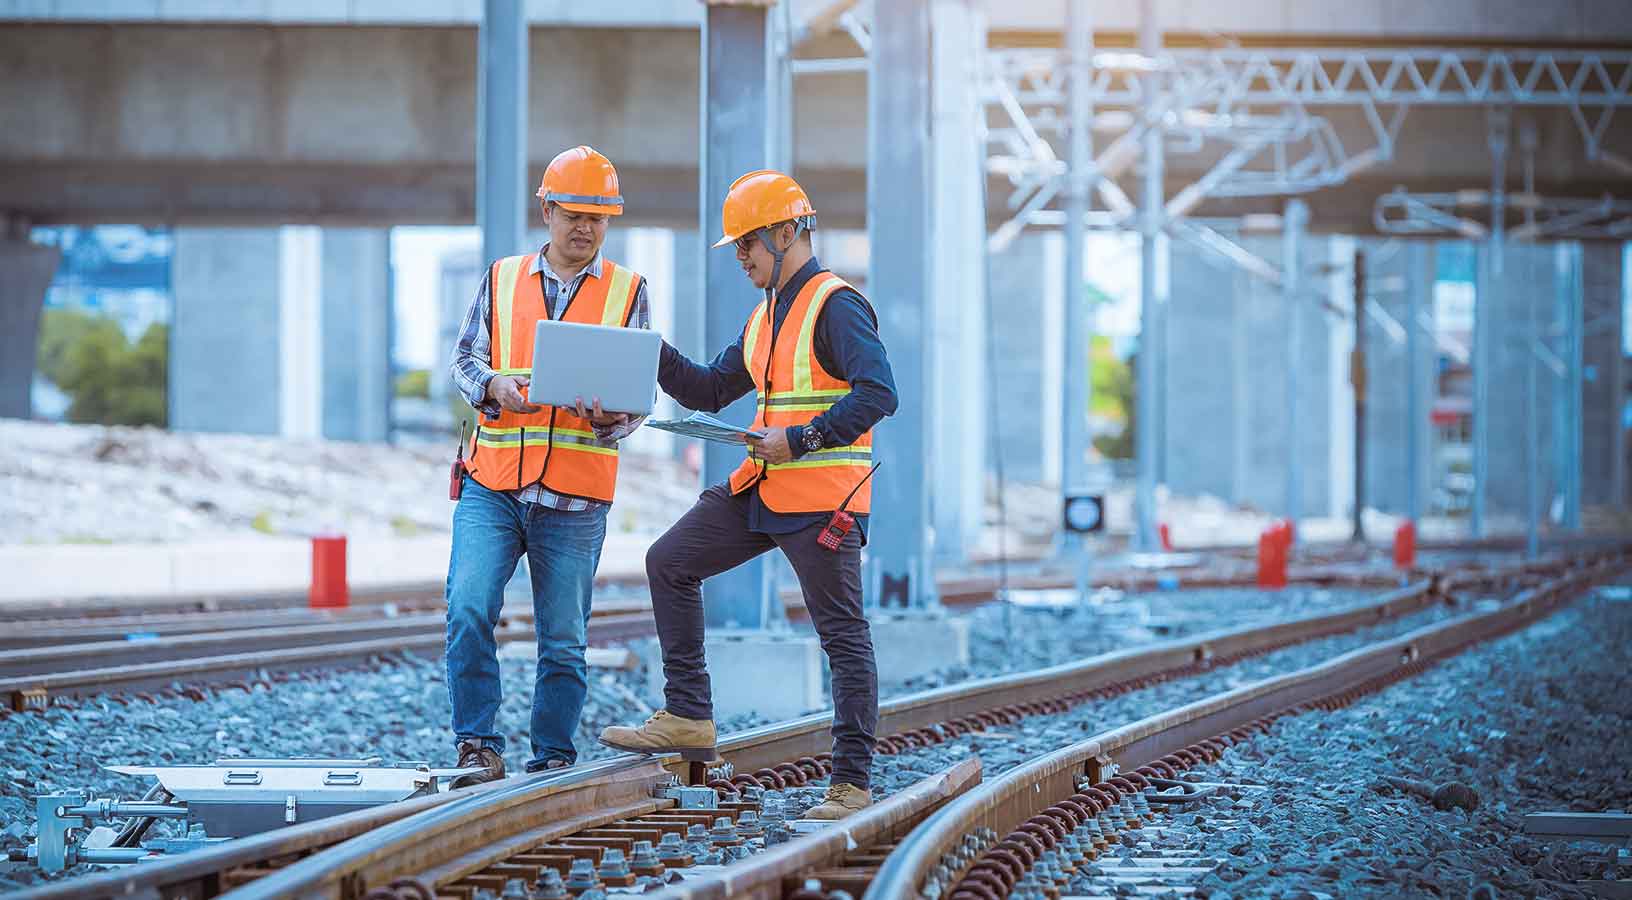 Ingénieur en train d'inspecter et de contrôler le processus de construction de l’aiguillage ferroviaire et les travaux sur la gare ferroviaire. Ingénieur portant un uniforme et un casque de sécurité au travail.